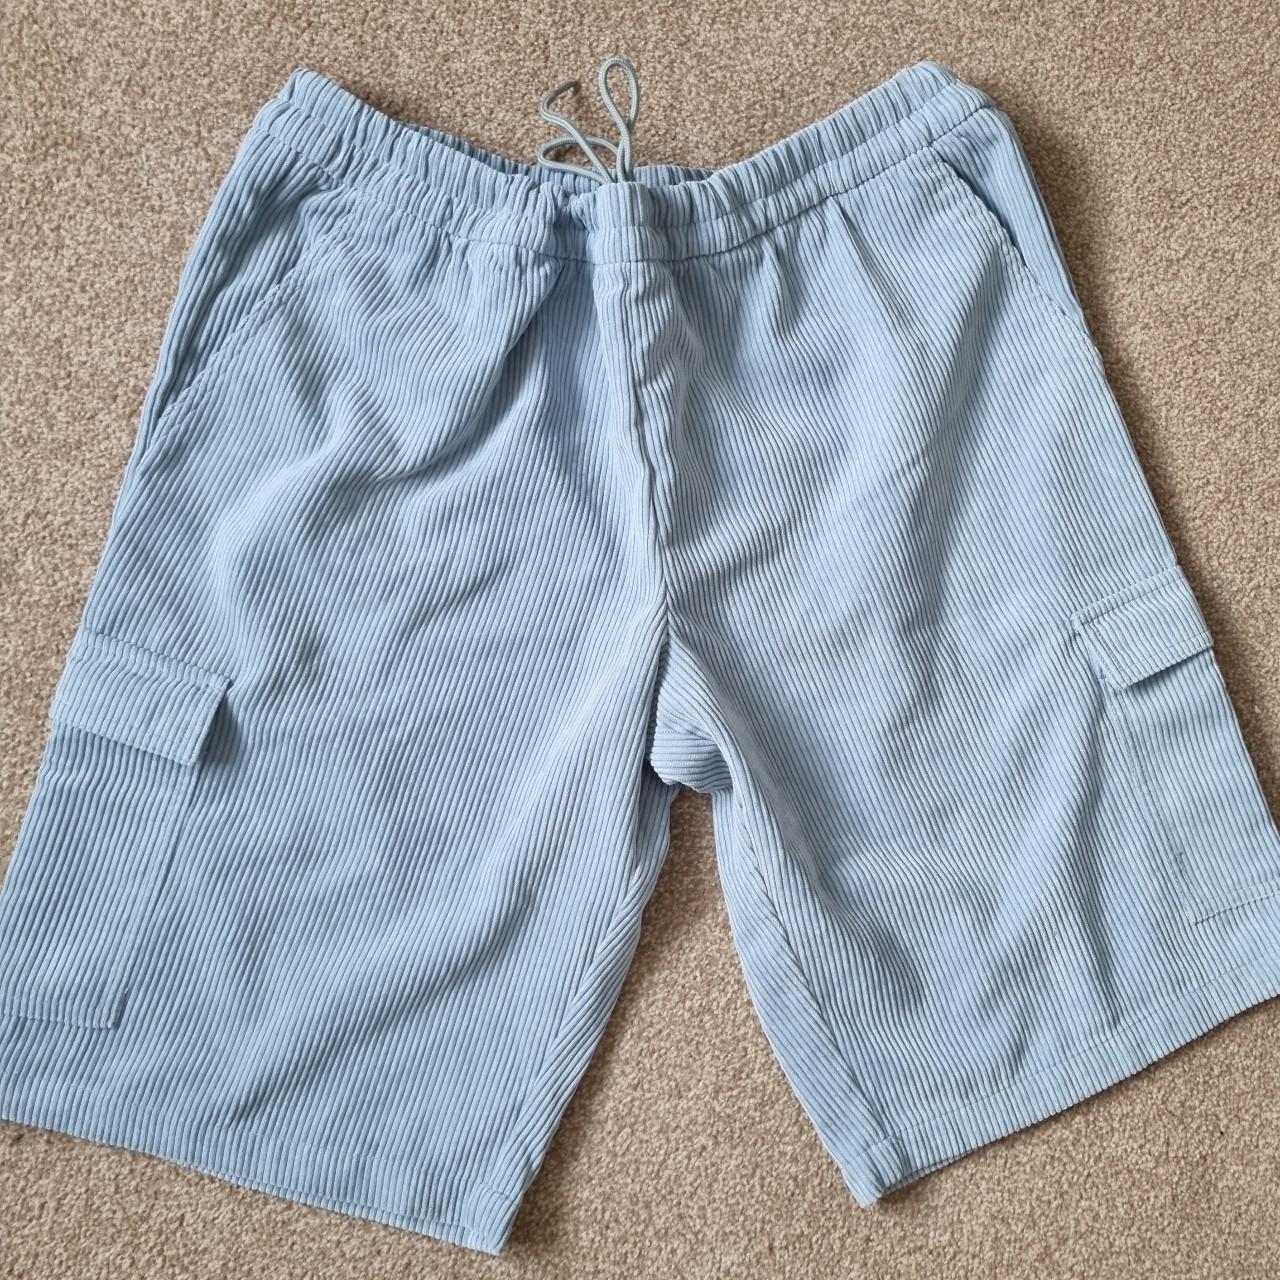 punkandyo cord shorts. size 34 - Depop